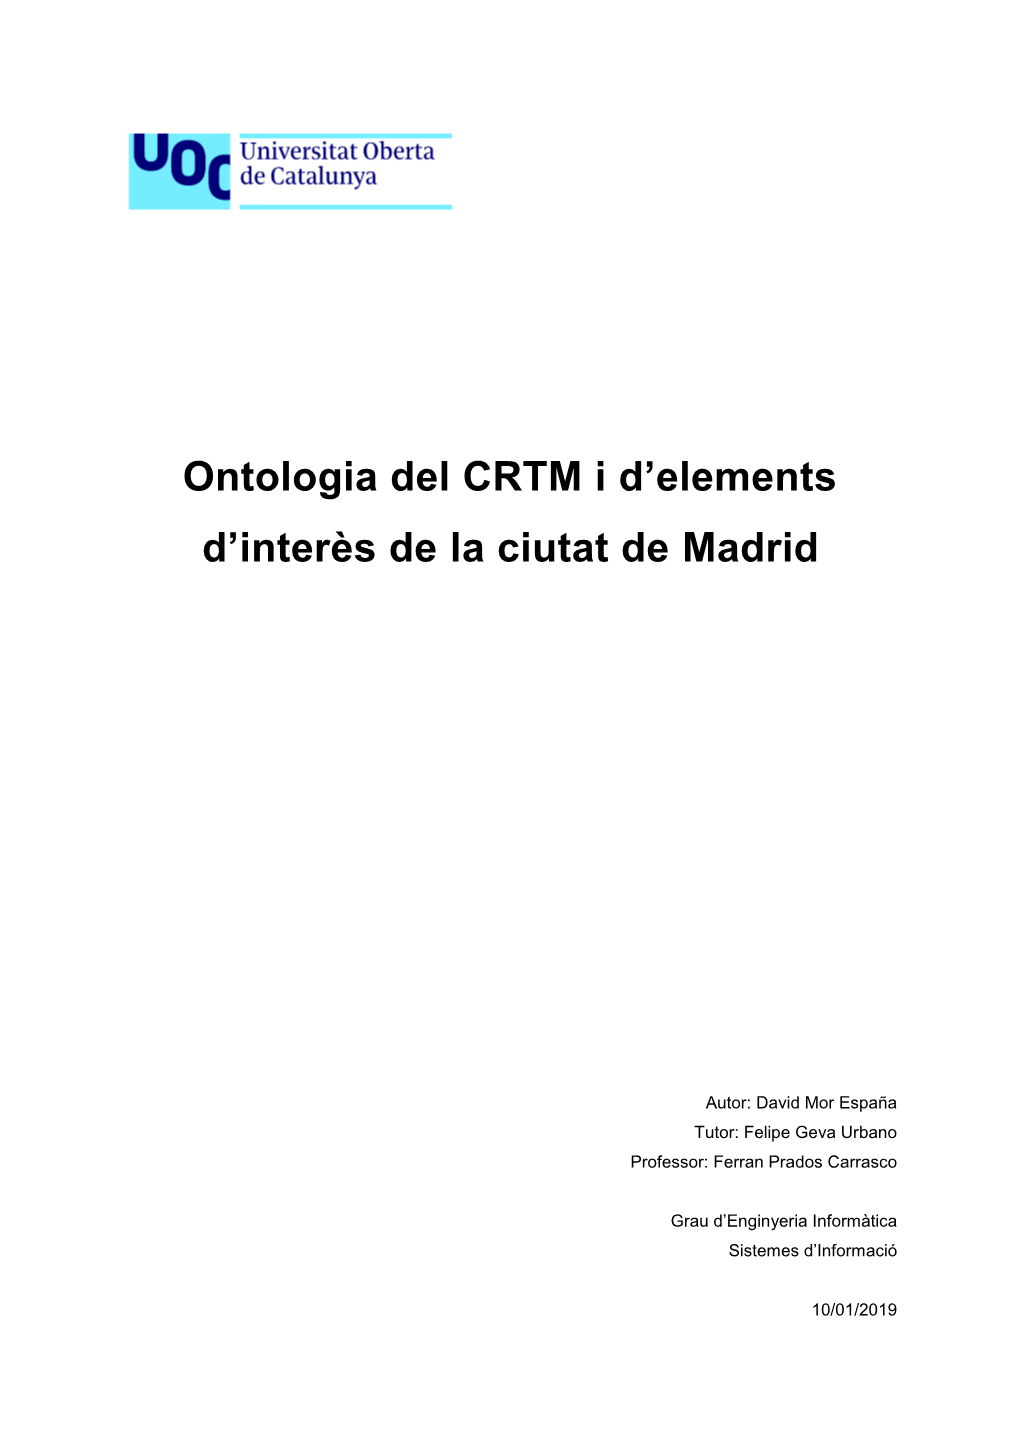 Ontologia Del CRTM I D'elements D'interès De La Ciutat De Madrid